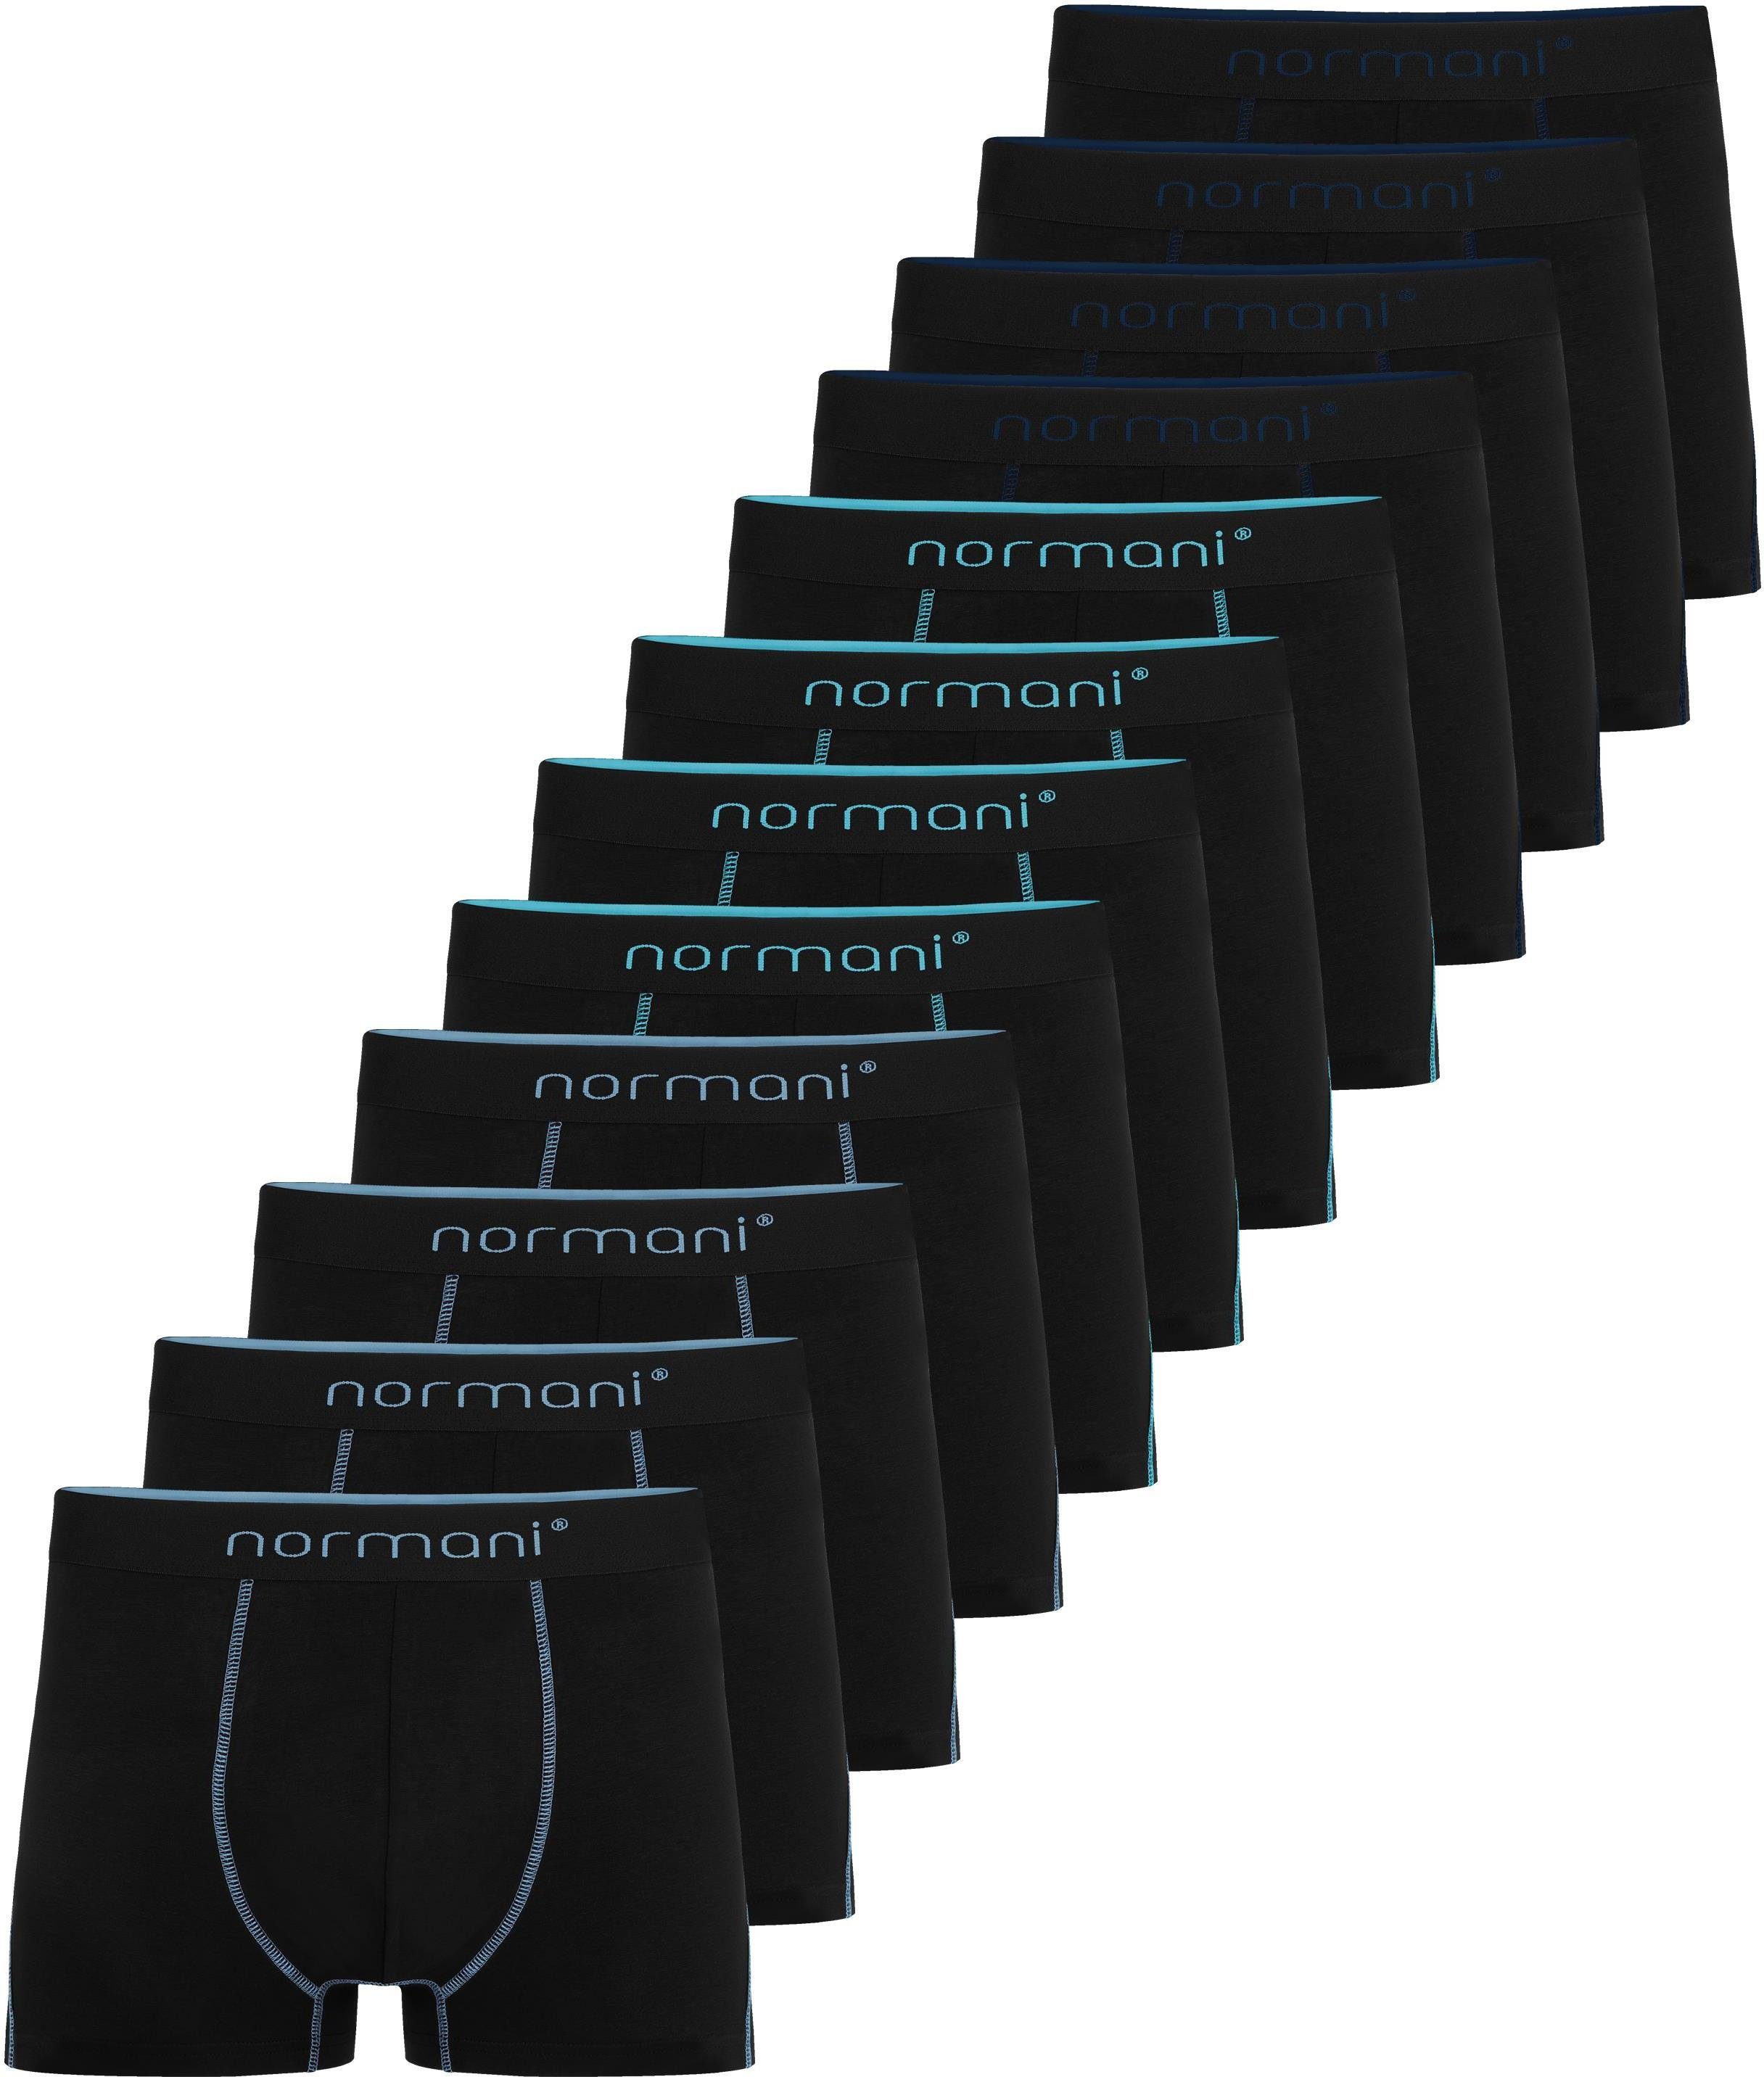 normani Boxershorts 12 x Herren Baumwoll-Boxershorts Unterhose aus atmungsaktiver Baumwolle für Männer Dunkelblau/Hellblau/Türkis